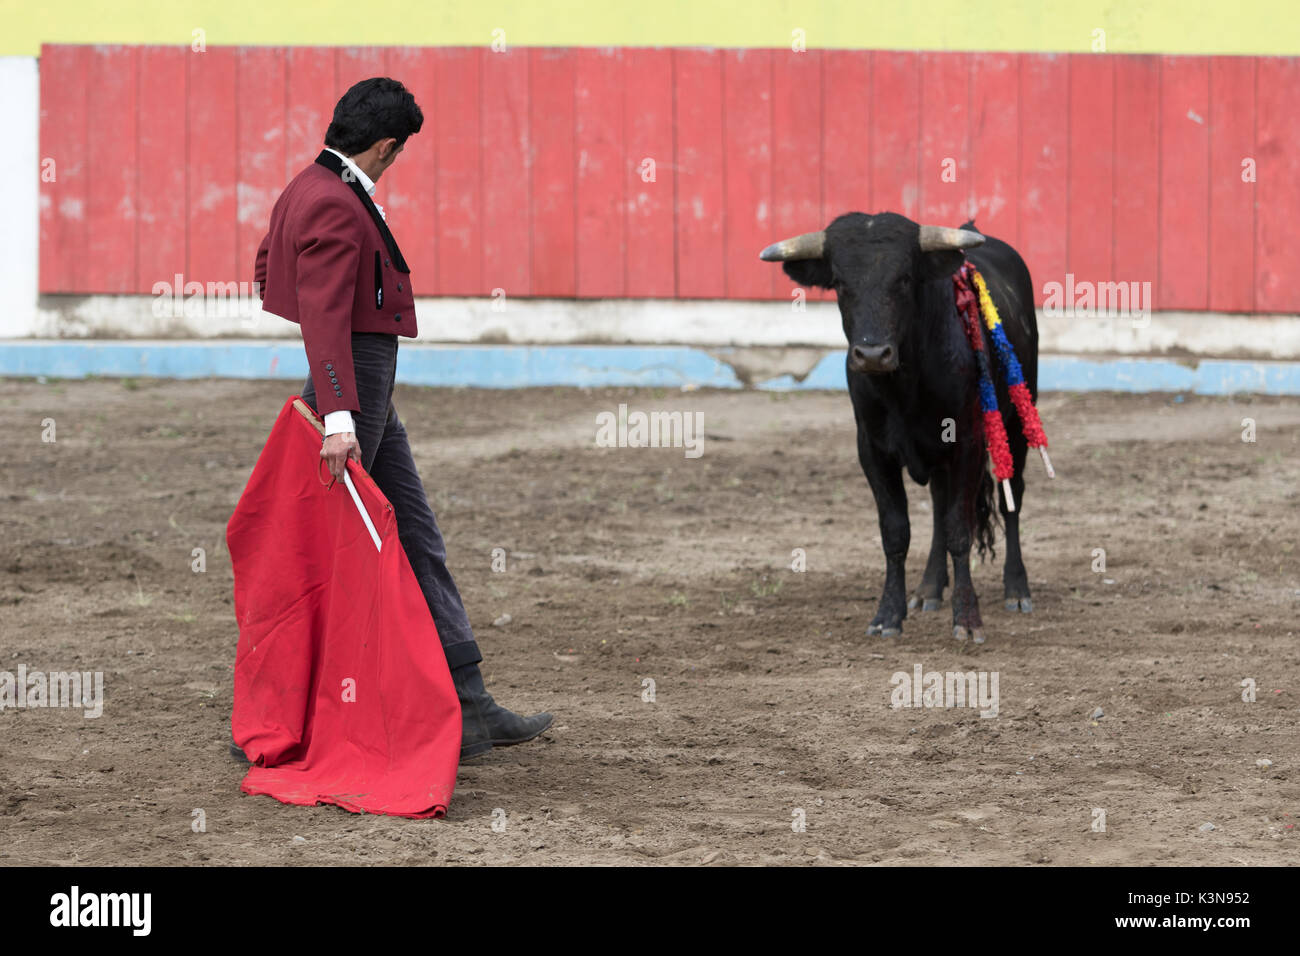 Giugno 18, 2017 Pujili, Ecuador: torero stnads di fronte di Bull in una via impegnativa in arena Foto Stock